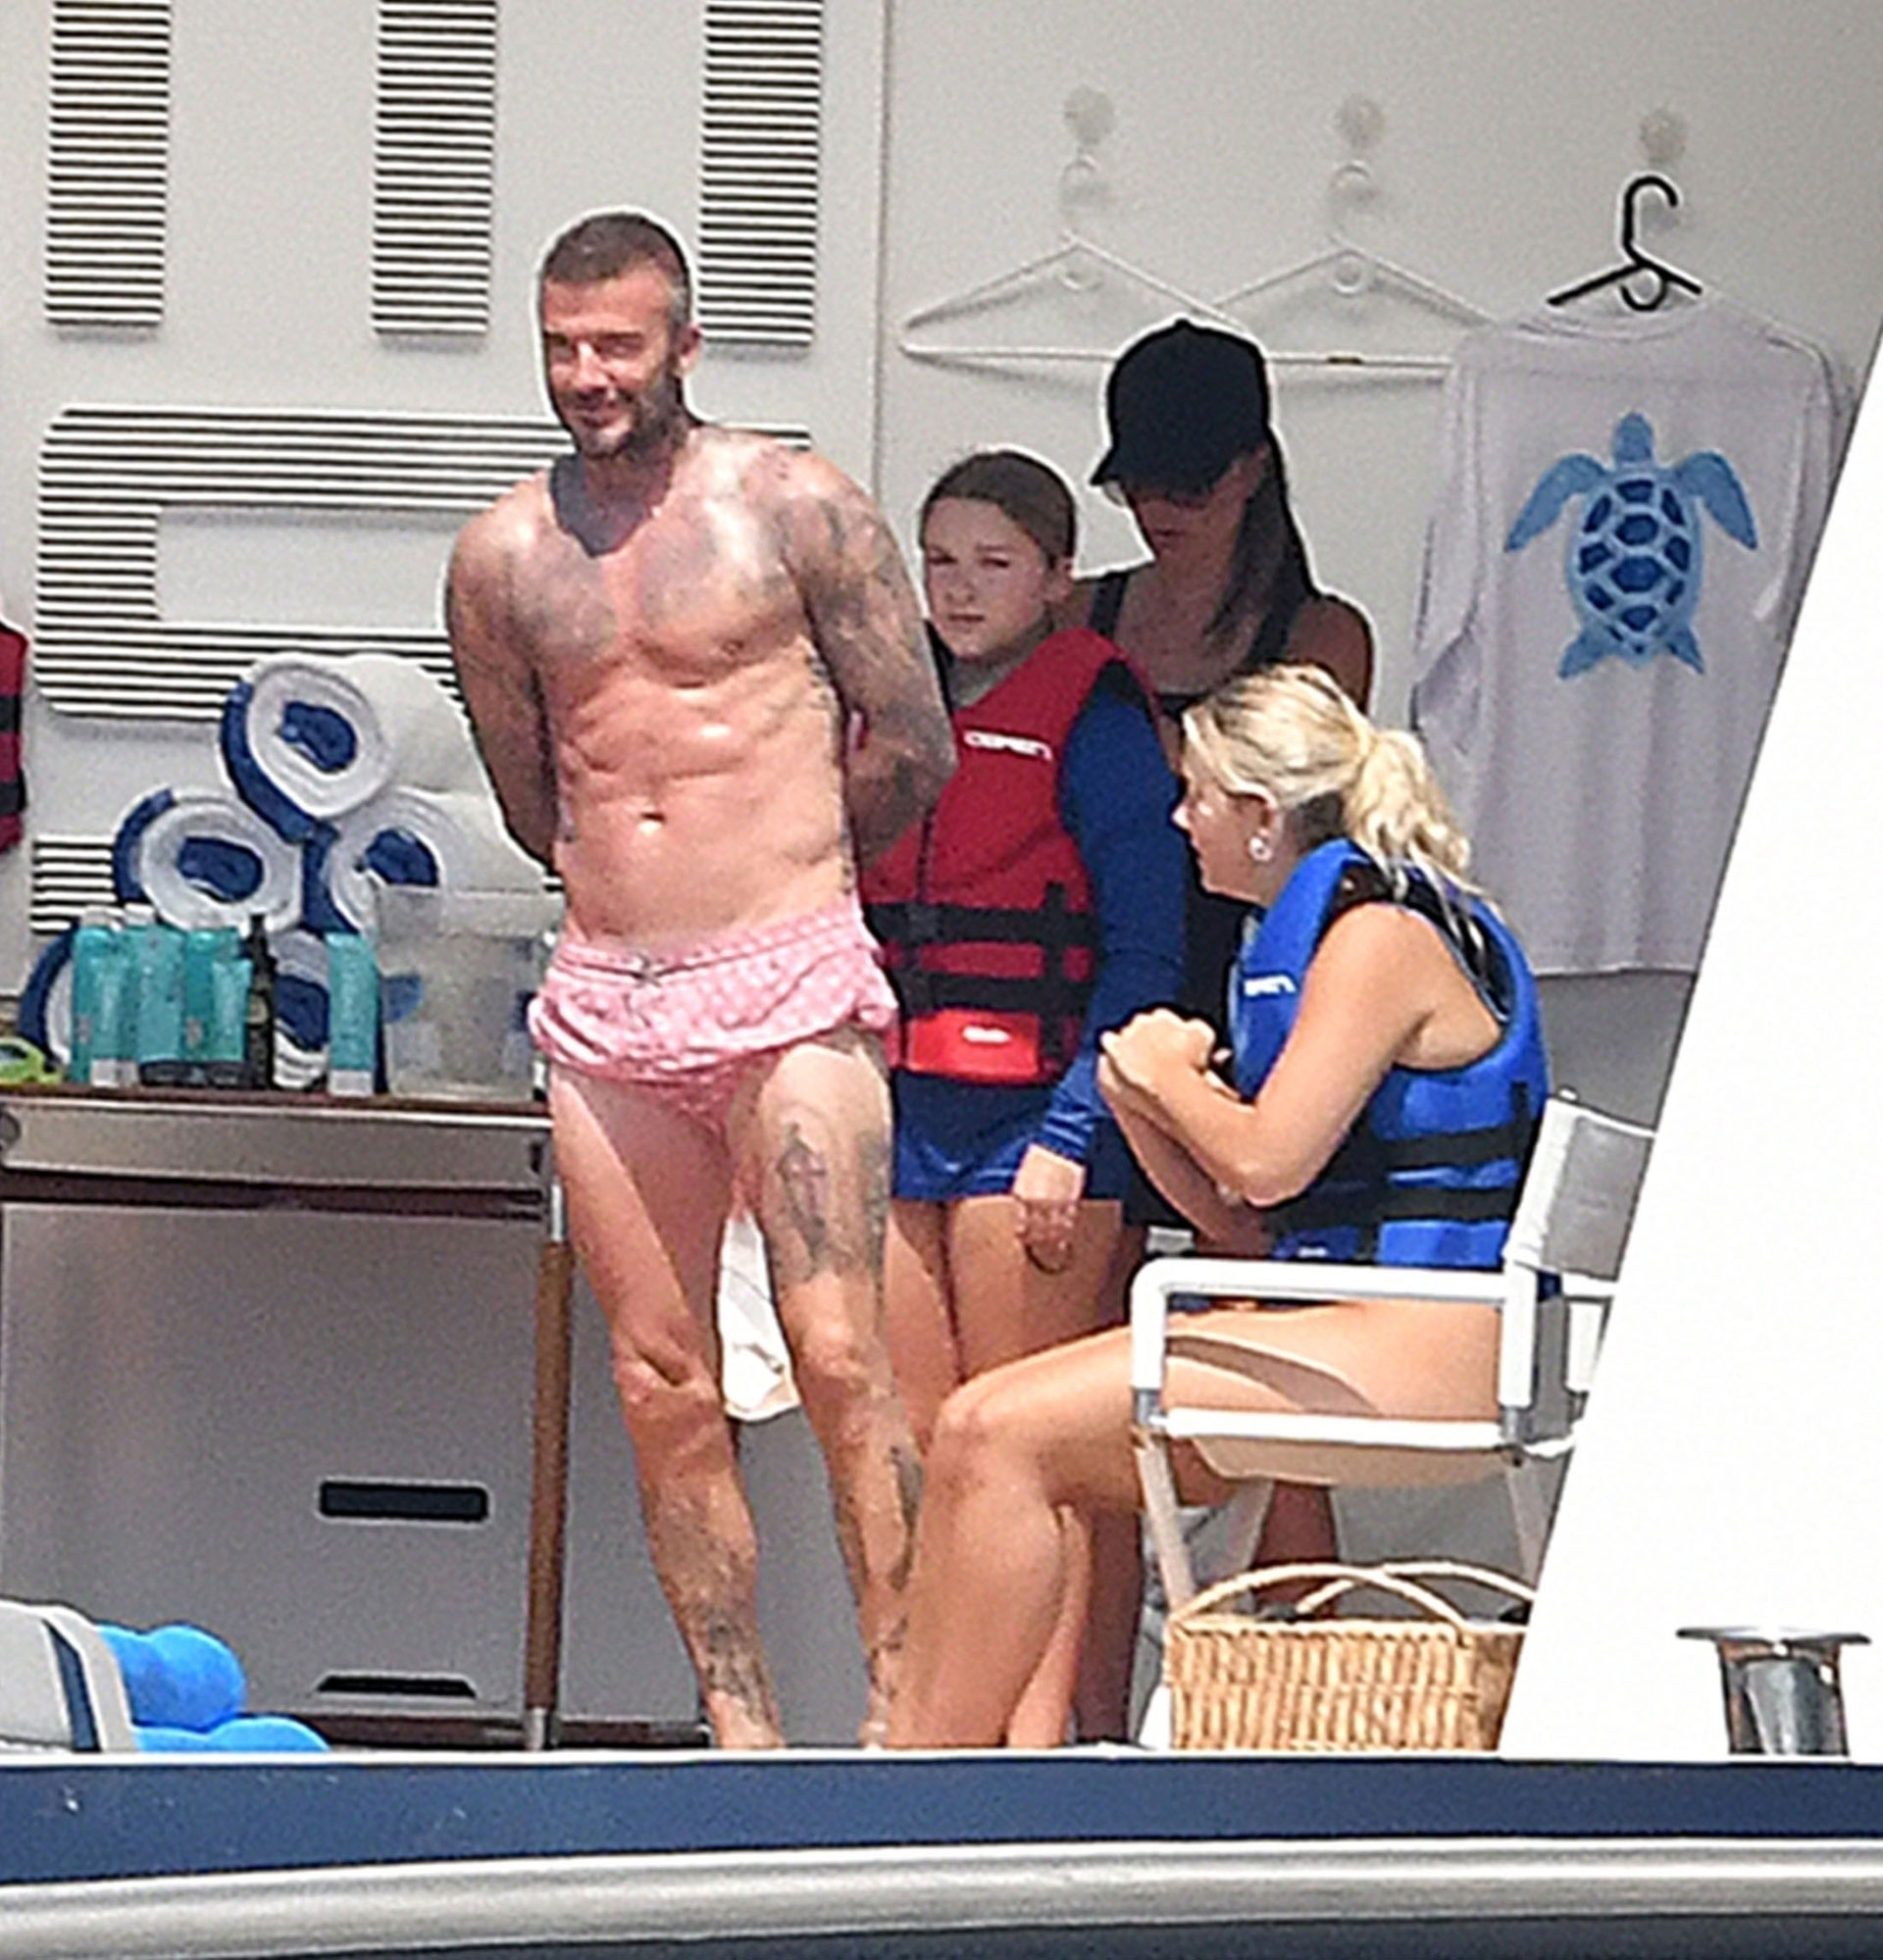 El exfutbolista inglés David Beckham muestra sus abdominales marcados mientras se relaja con su esposa Victoria Beckham, su hija Harper y su hijo Cruz (que estaba con su novia) en un yate en Positano